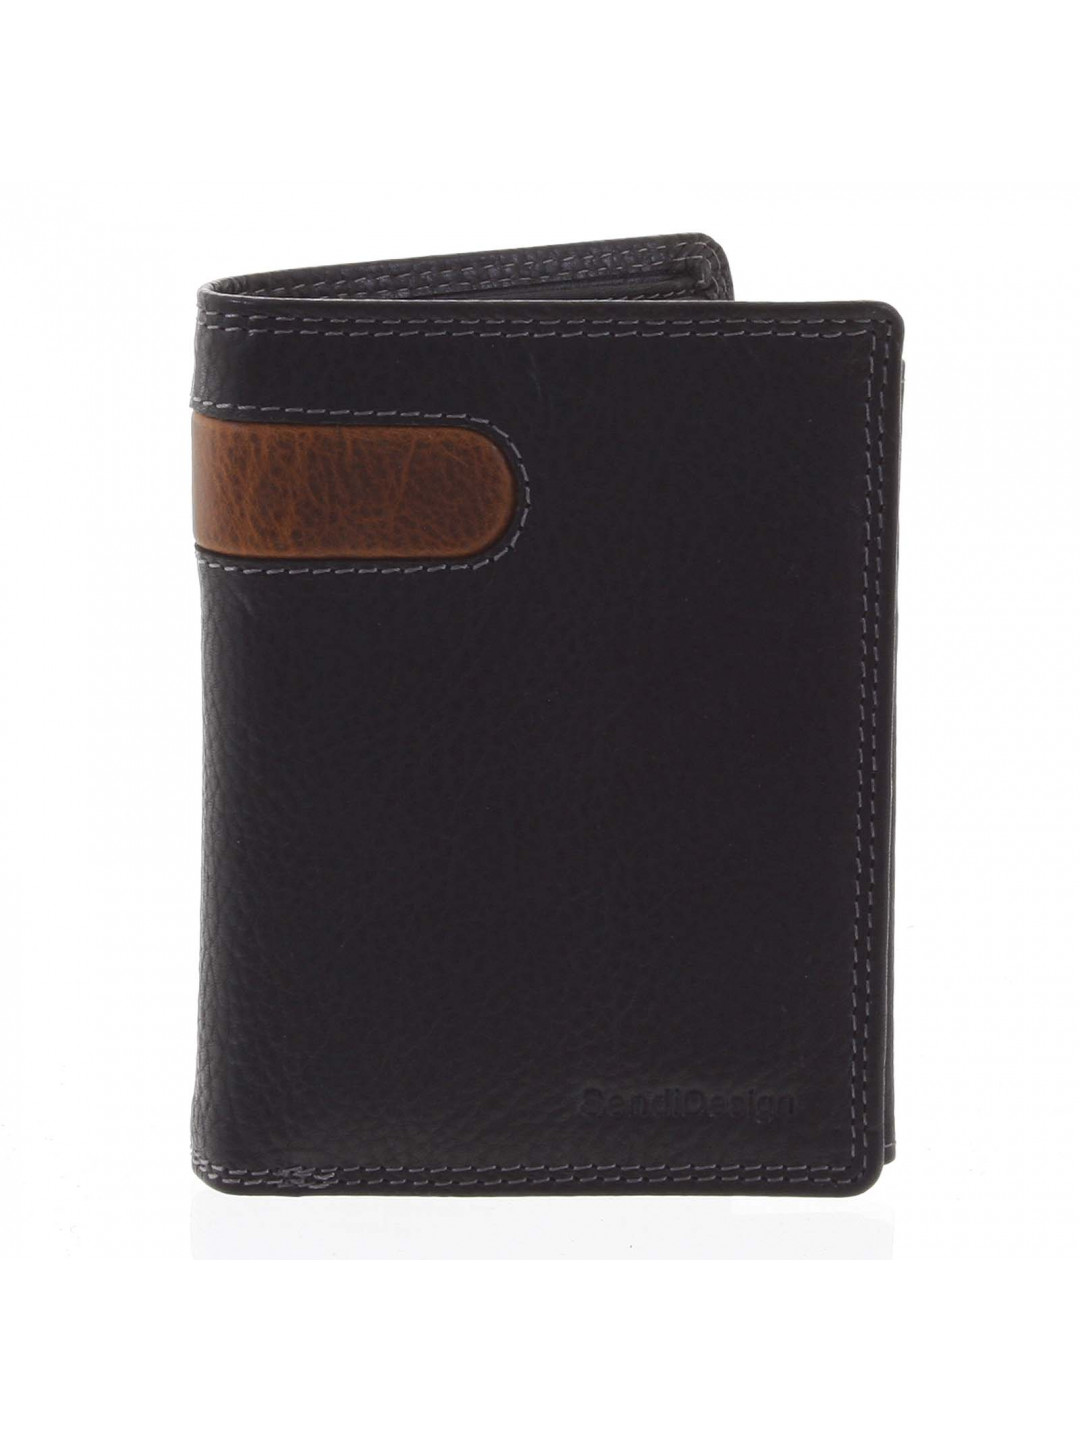 Pánská kožená peněženka černá – SendiDesign Parah